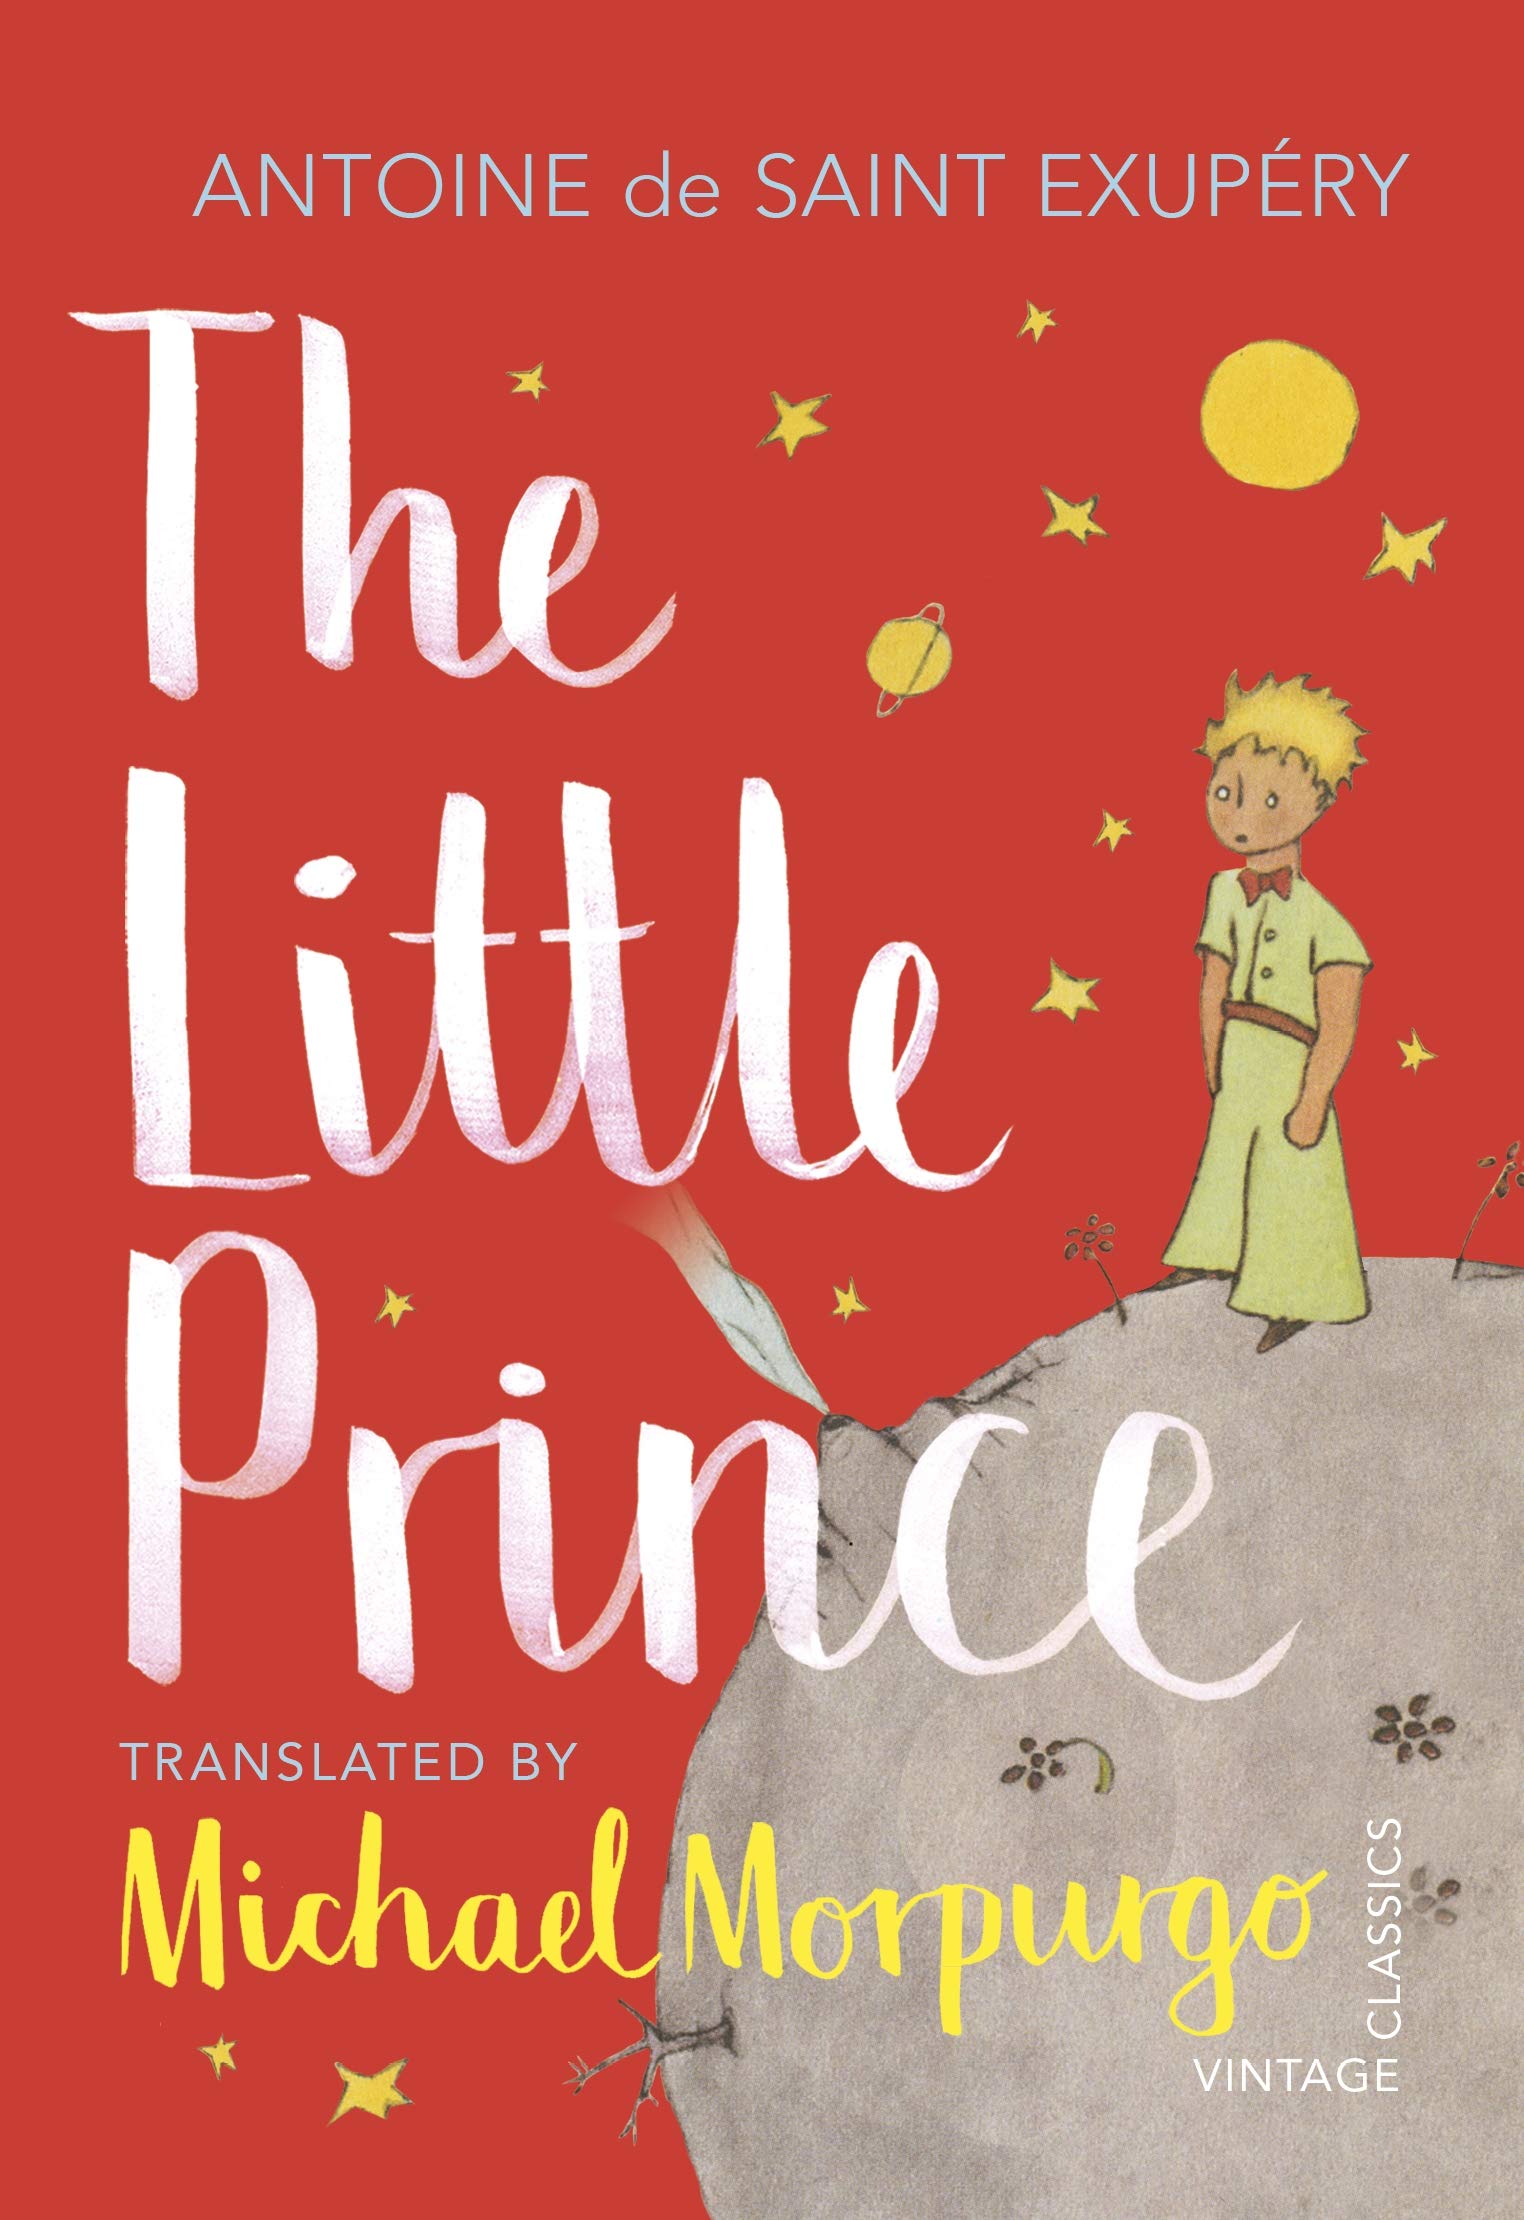 Little Prince | Antoine De Saint-Exupery image15